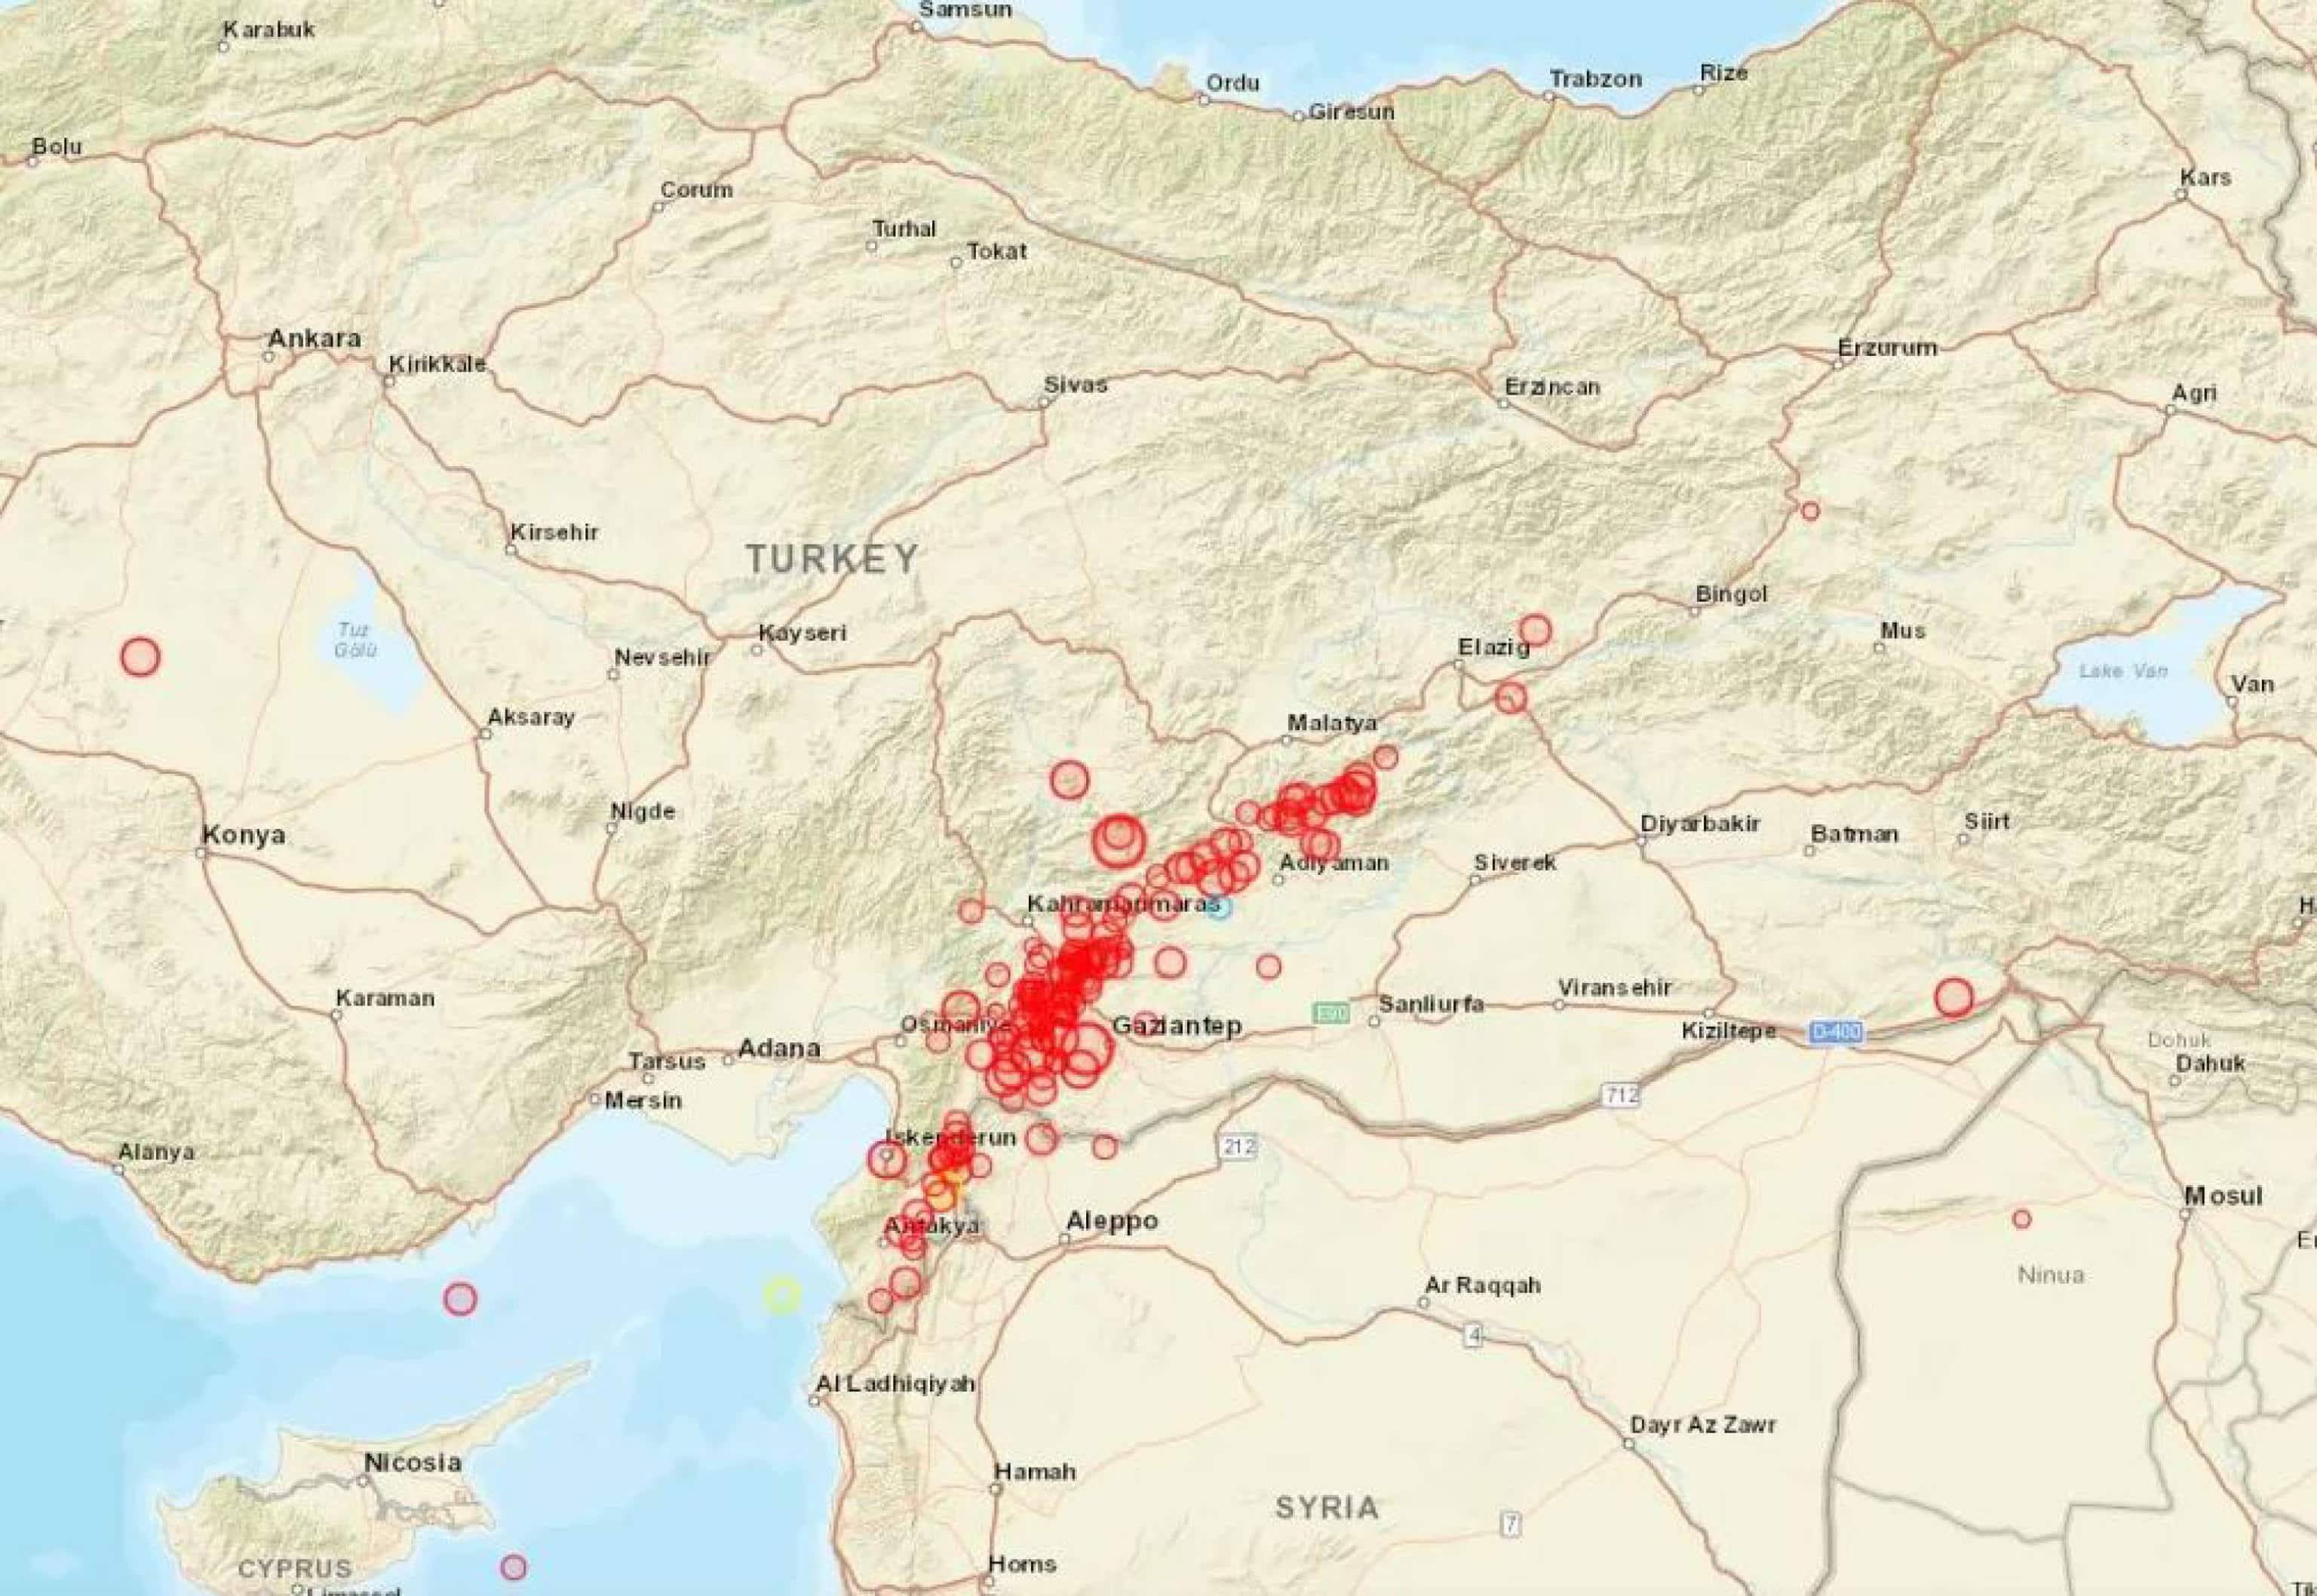 La cartina dell'Ingv mostra gli eventi sismici in Turchia del 6 febbraio 2023.
TWITTER/ INGVterremoti
+++ ATTENZIONE LA FOTO NON PUO' ESSERE PUBBLICATA O RIPRODOTTA SENZA L'AUTORIZZAZIONE DELLA FONTE DI ORIGINE CUI SI RINVIA +++ NPK +++